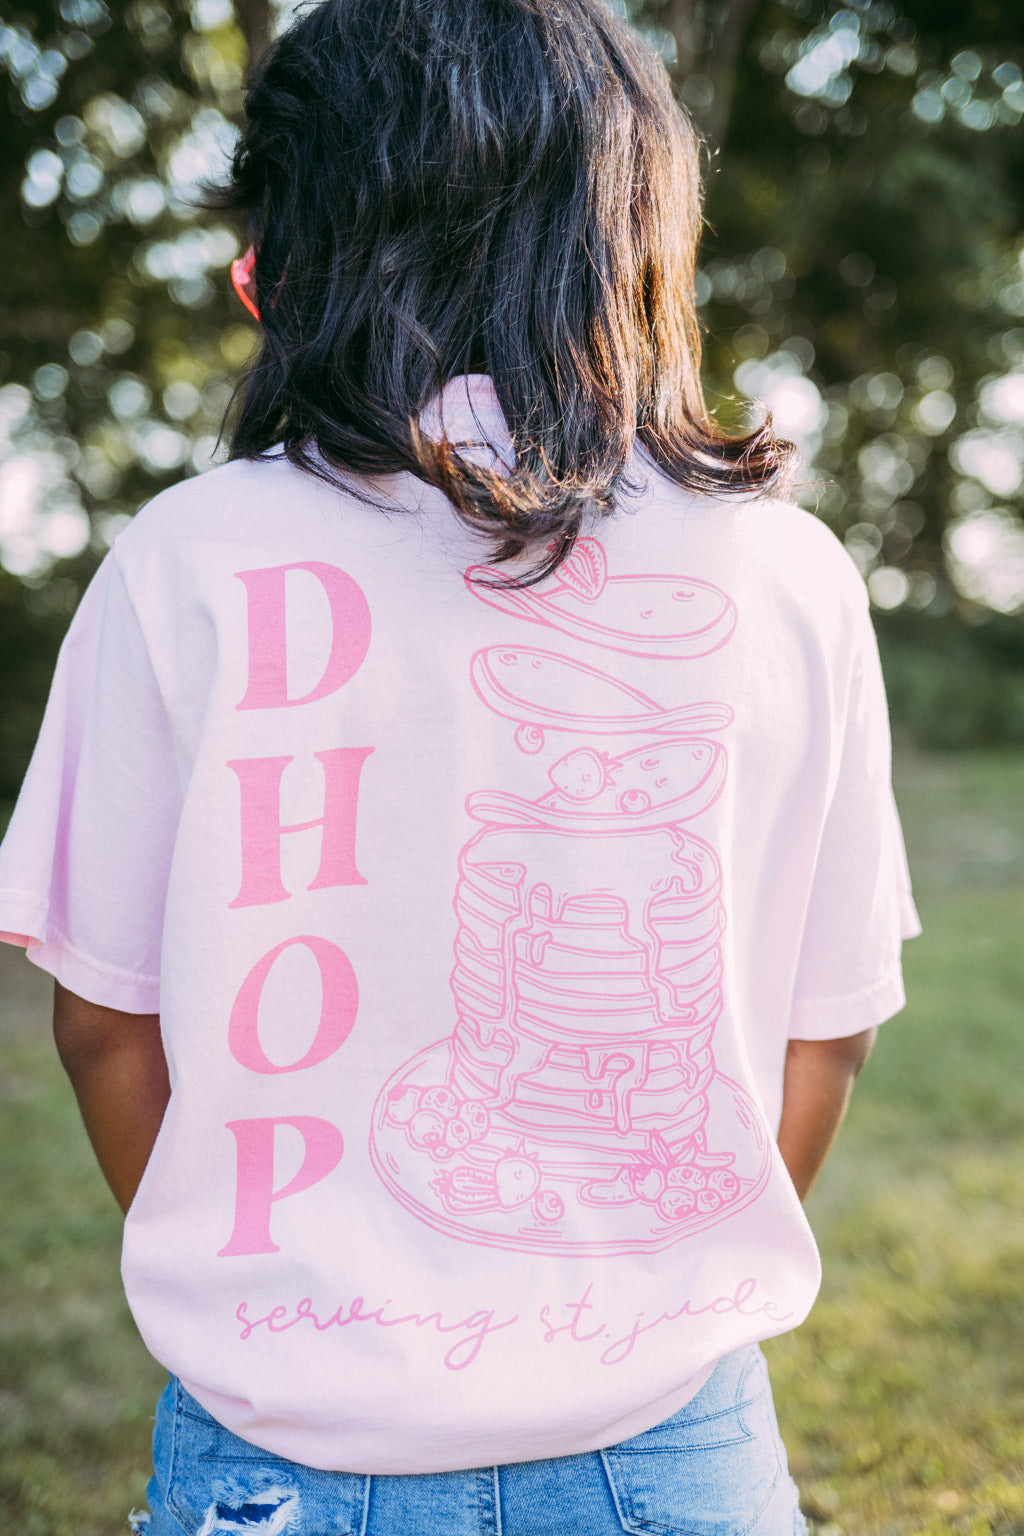 Tri Delta DHOP Pink Tshirt